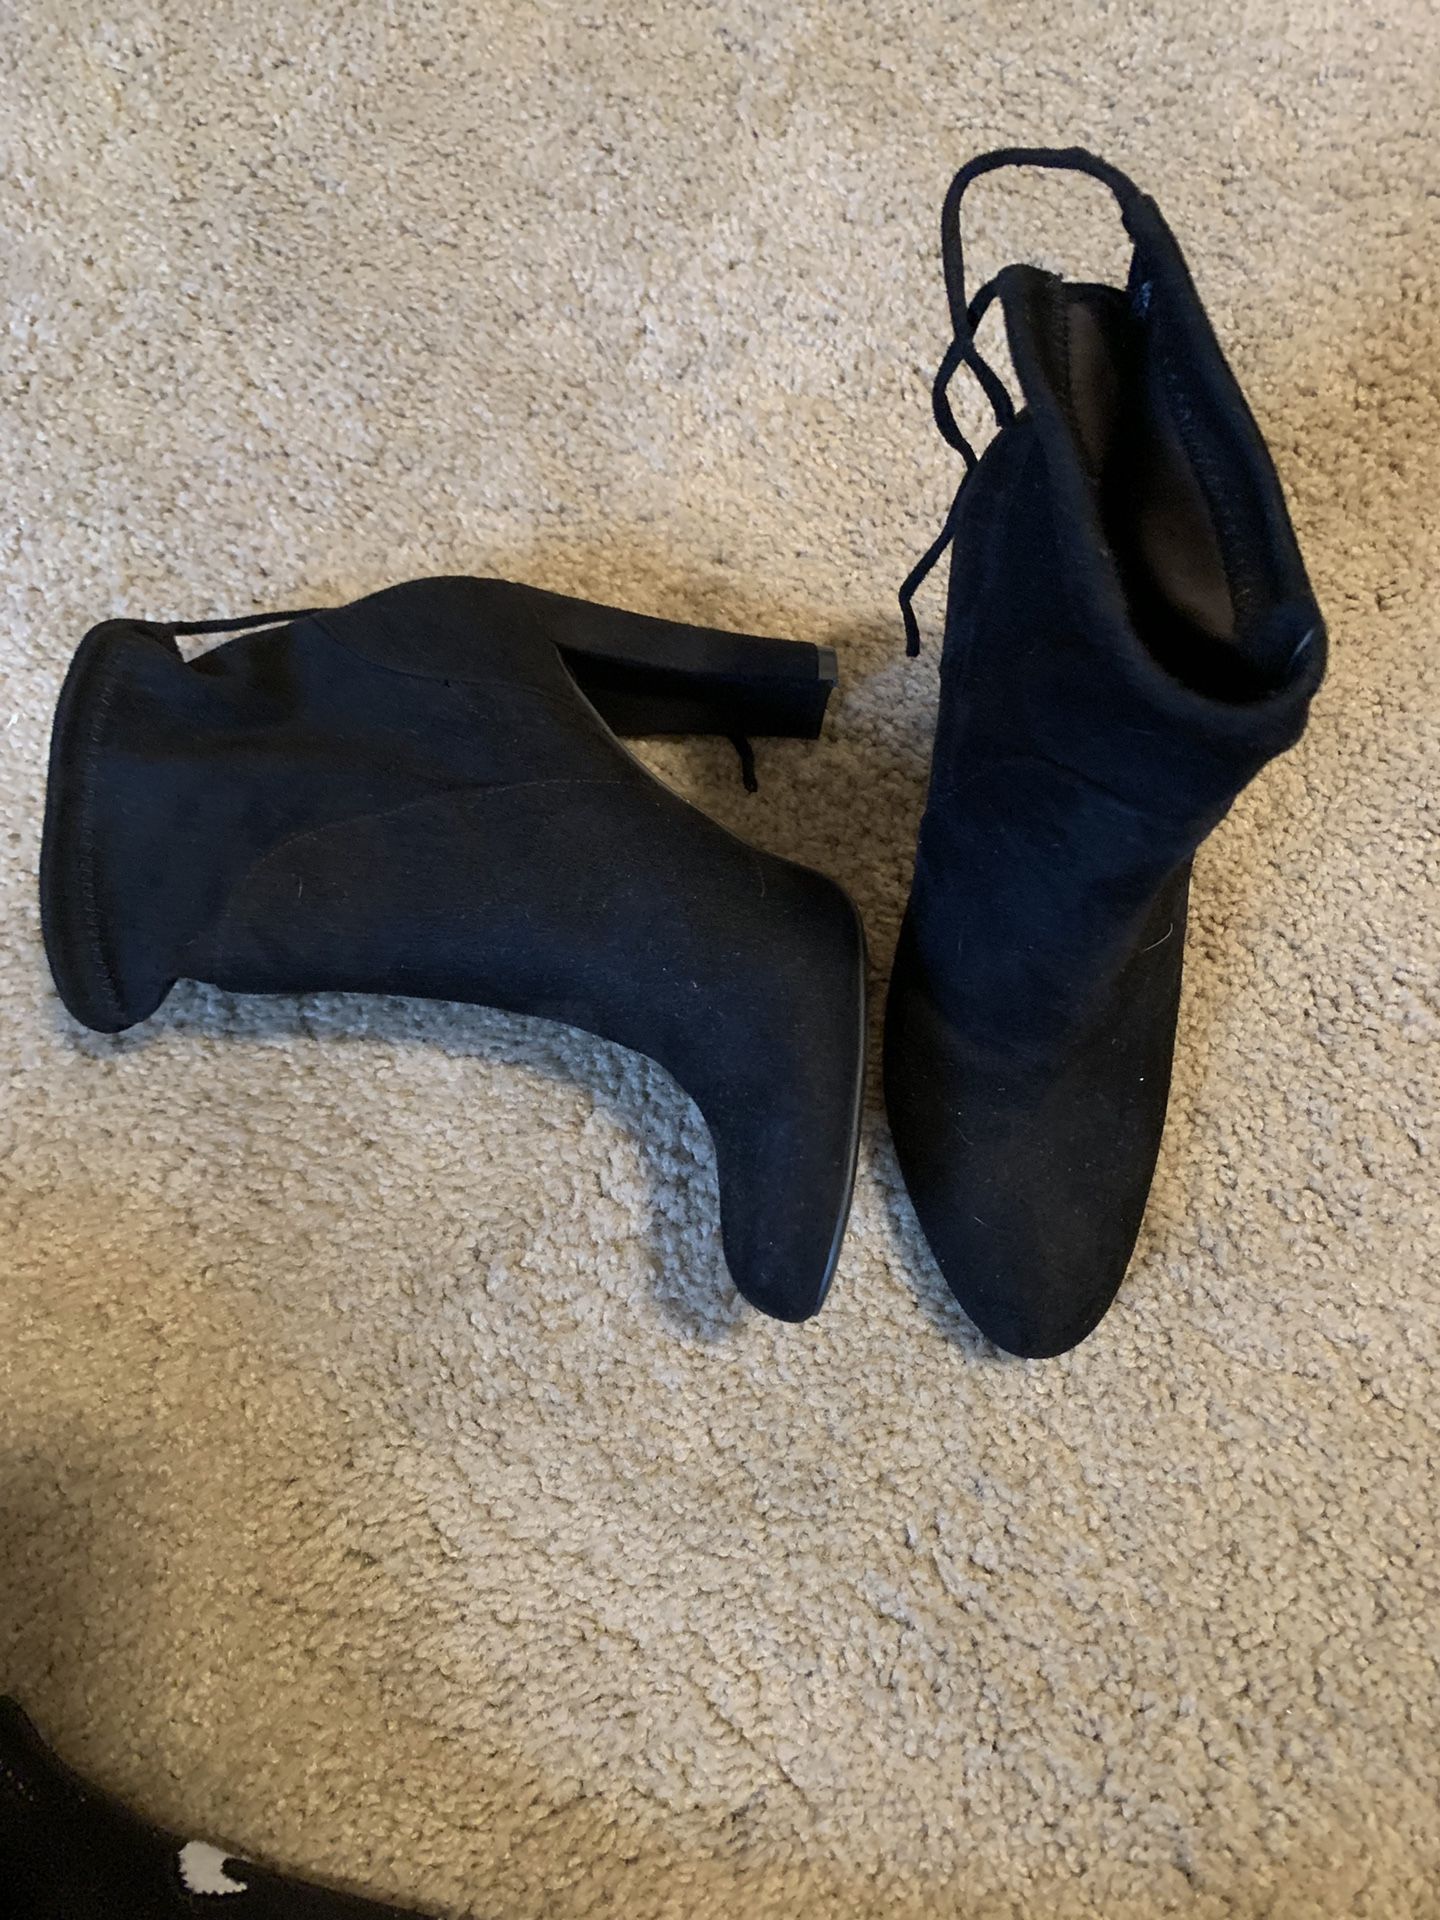 Size 7 high heel booties